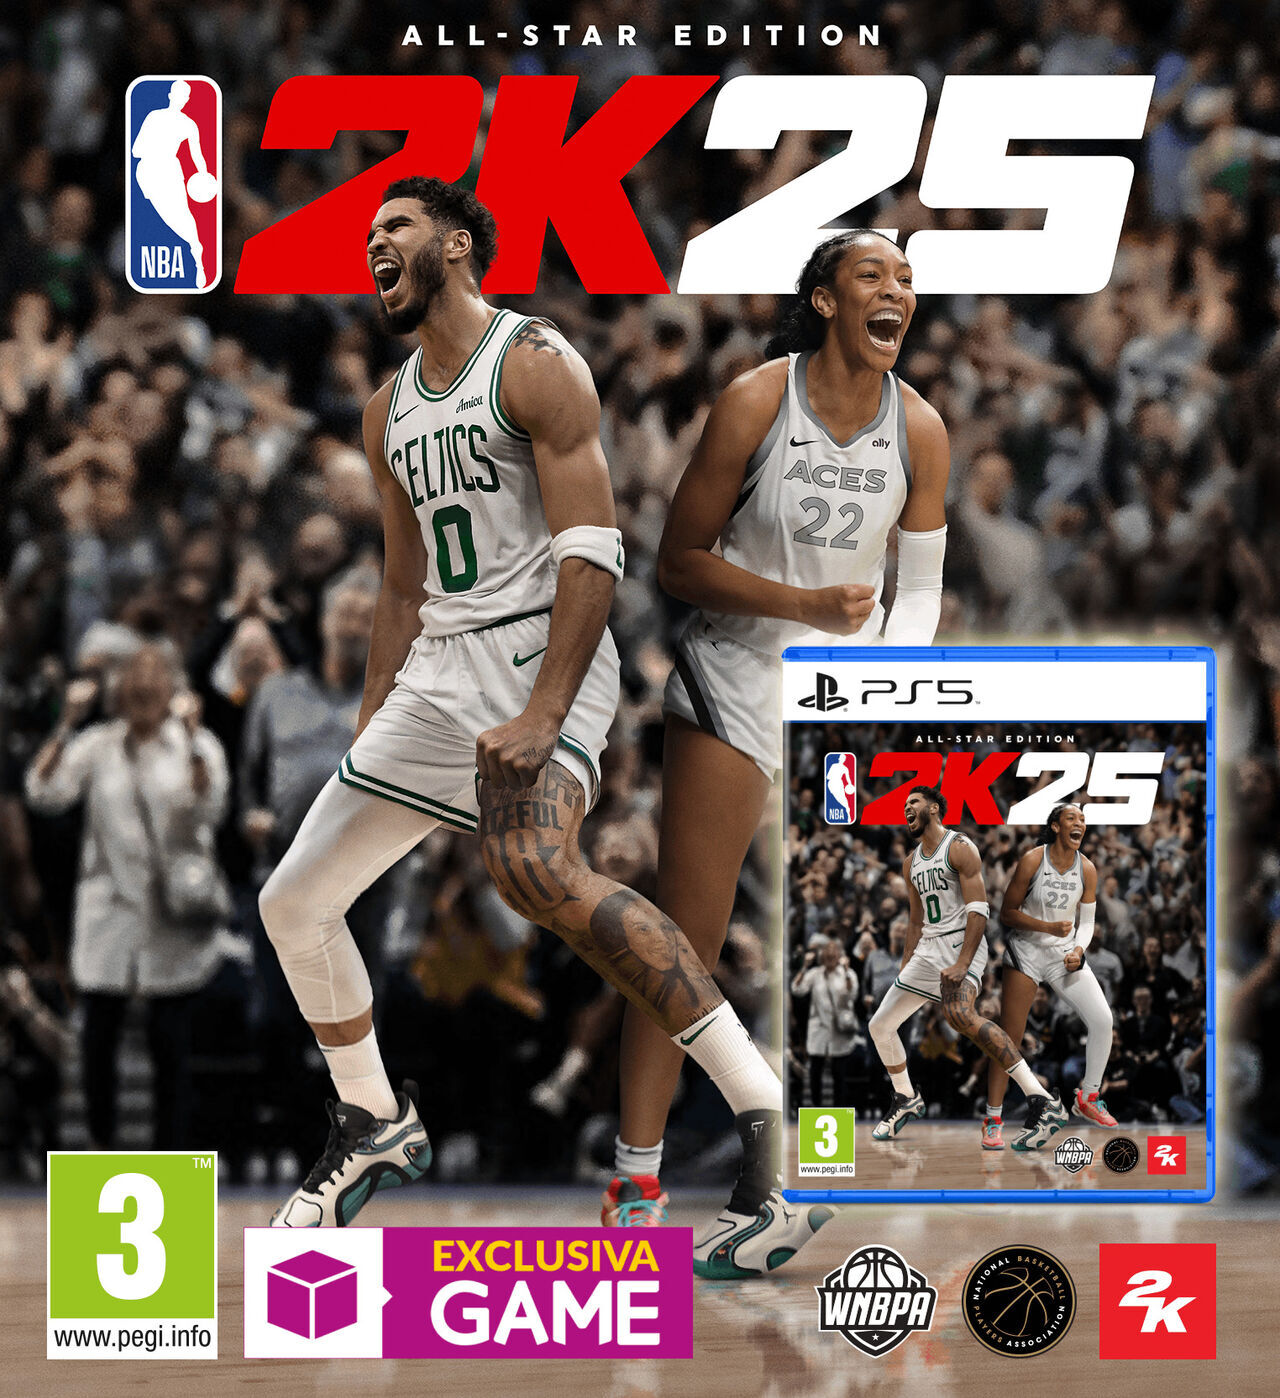 Consigue NBA 2K25, reserva la All-Star Edition de PS5 exclusiva de GAME y disfruta del mejor baloncesto